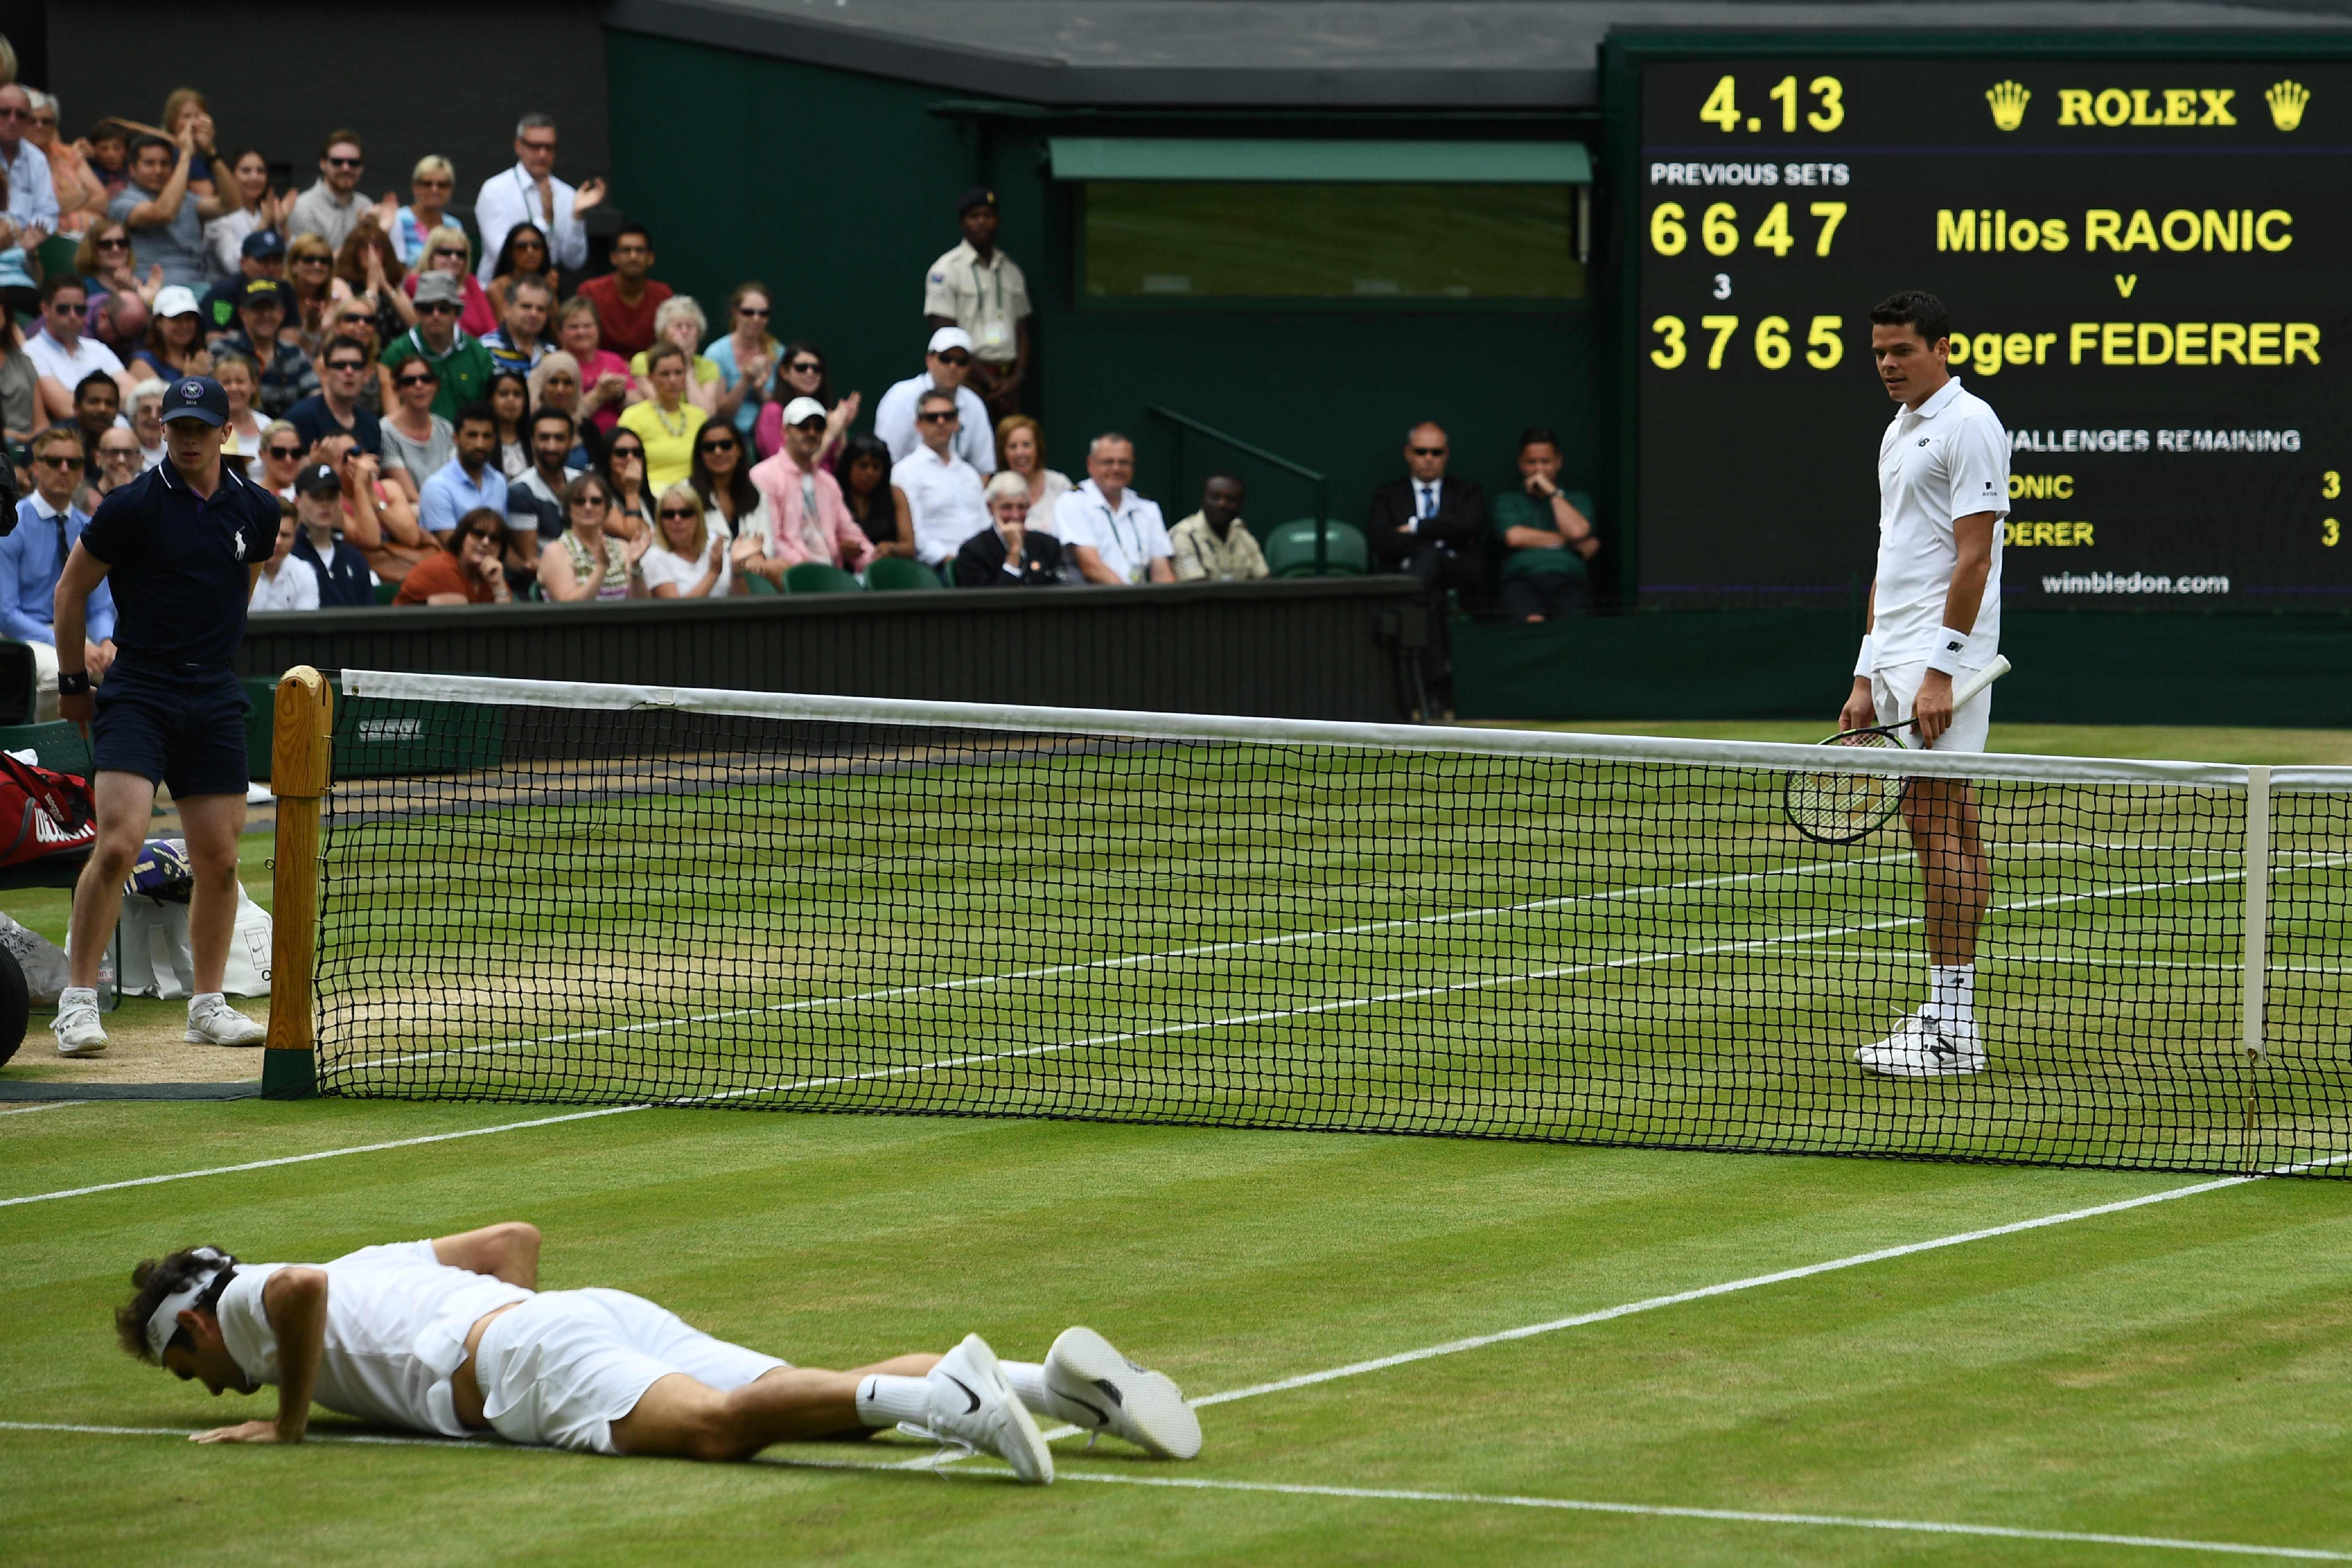 Wimbledon: Raonic ends Federer's run to reach first major final